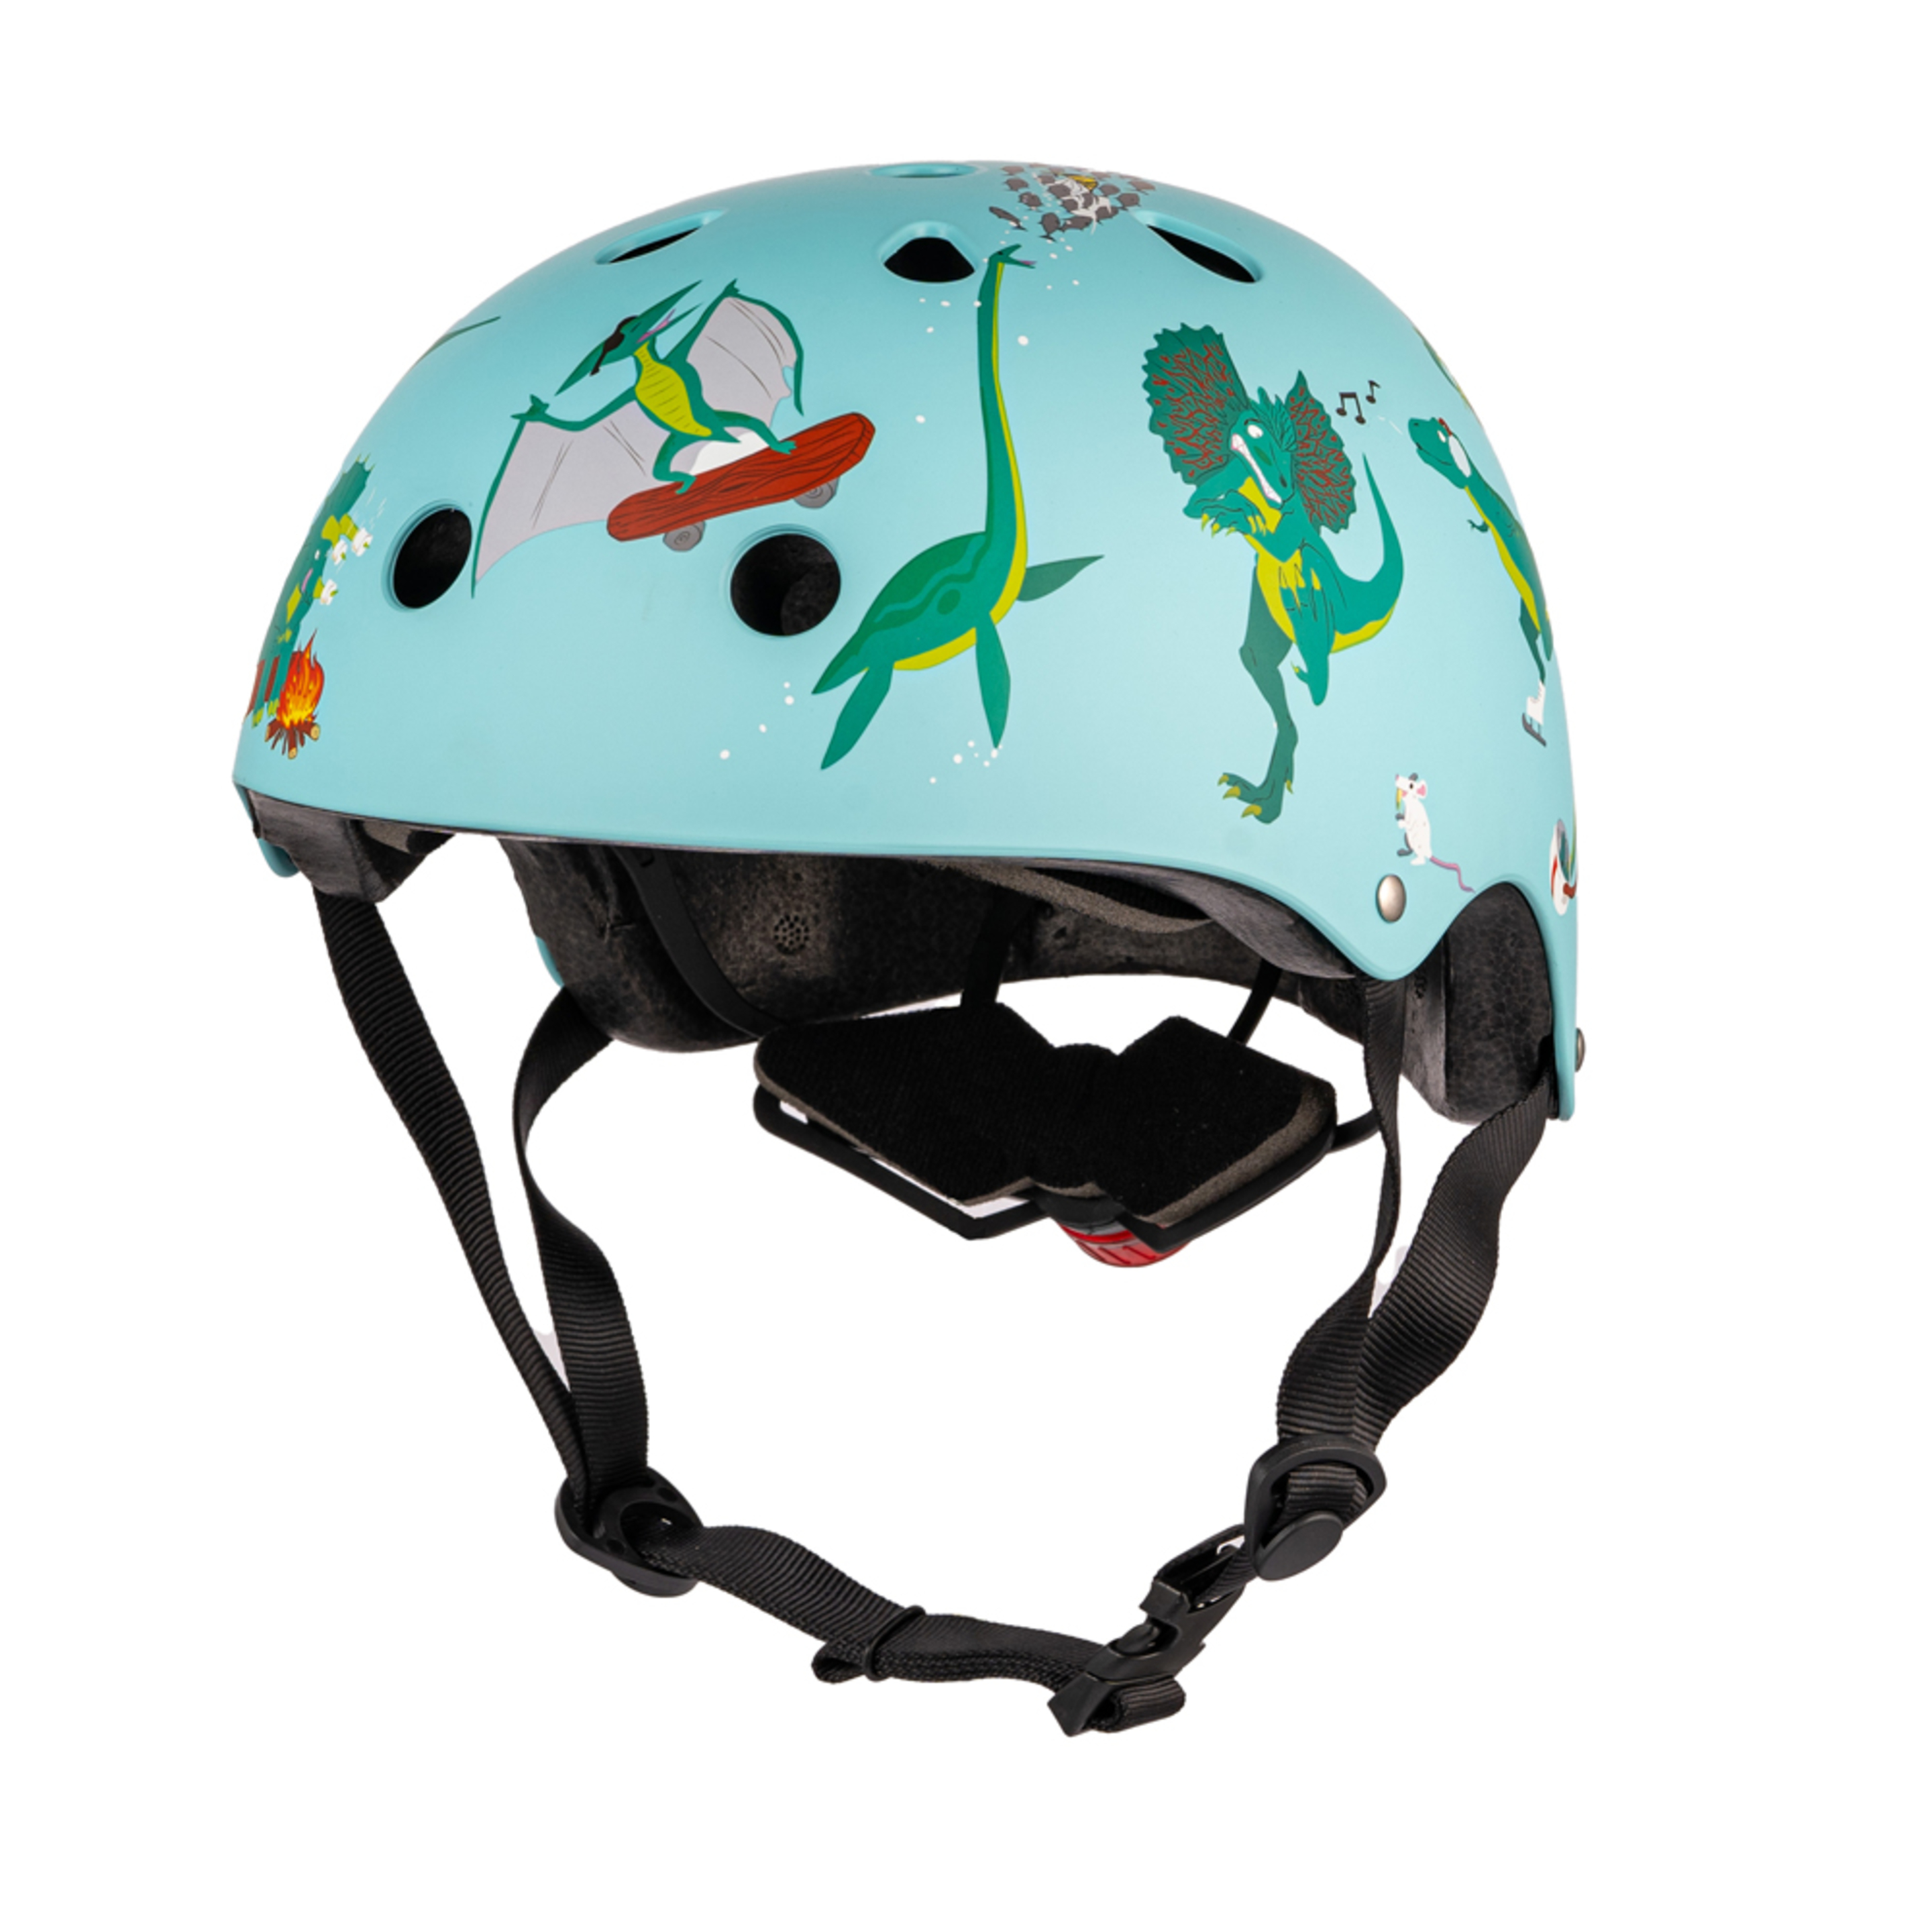 Casco De Bicicleta Mini Hornit Lids Astronaut - Azul Turquesa - ¡el Casco Más Chulo Del Mundo!  MKP